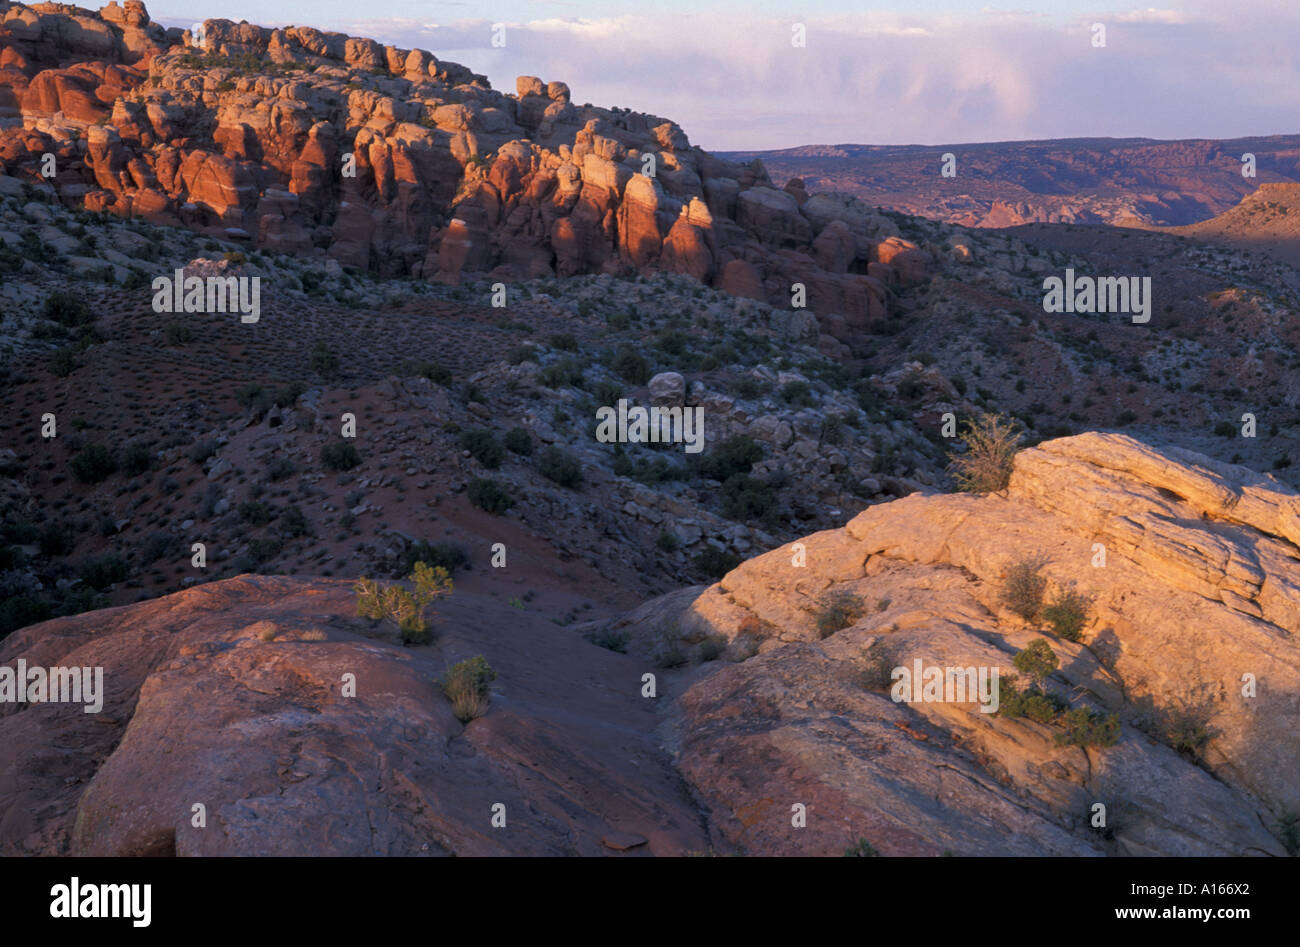 Arches Nationalpark UT Wacholder Salbei Pinsel. Entrada und Navajo-Formationen in der Wüste von Utah. Feuerofen Sicht. Stockfoto